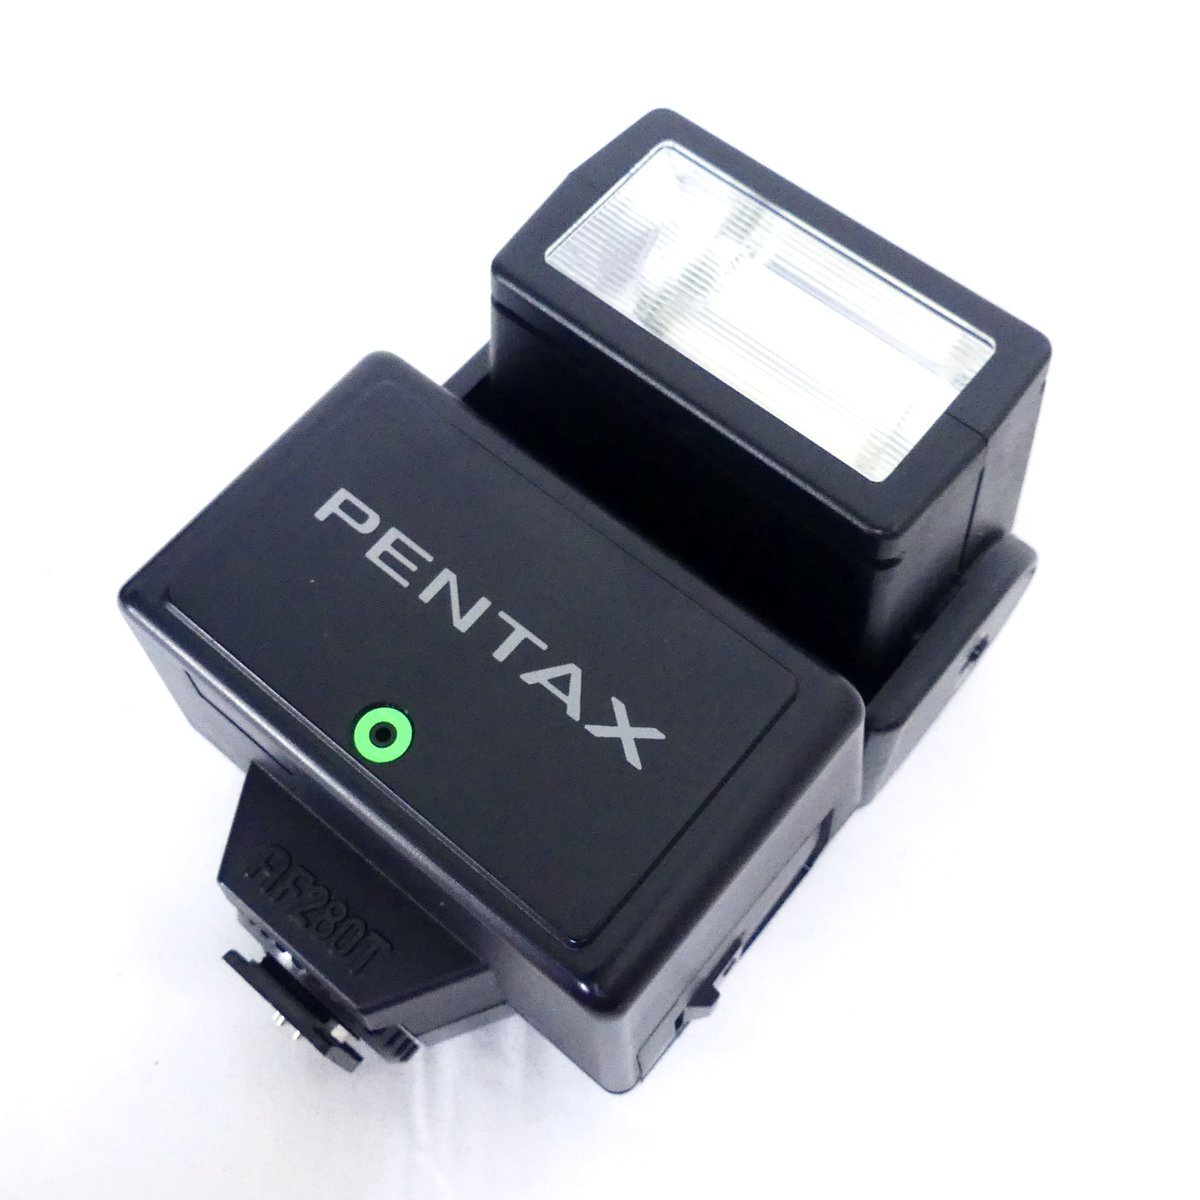 PENTAX Pentax AF280T стробоскоп flash фотосъемка машинное оборудование камера периферийные устройства камера аксессуары текущее состояние товар USED /2404C